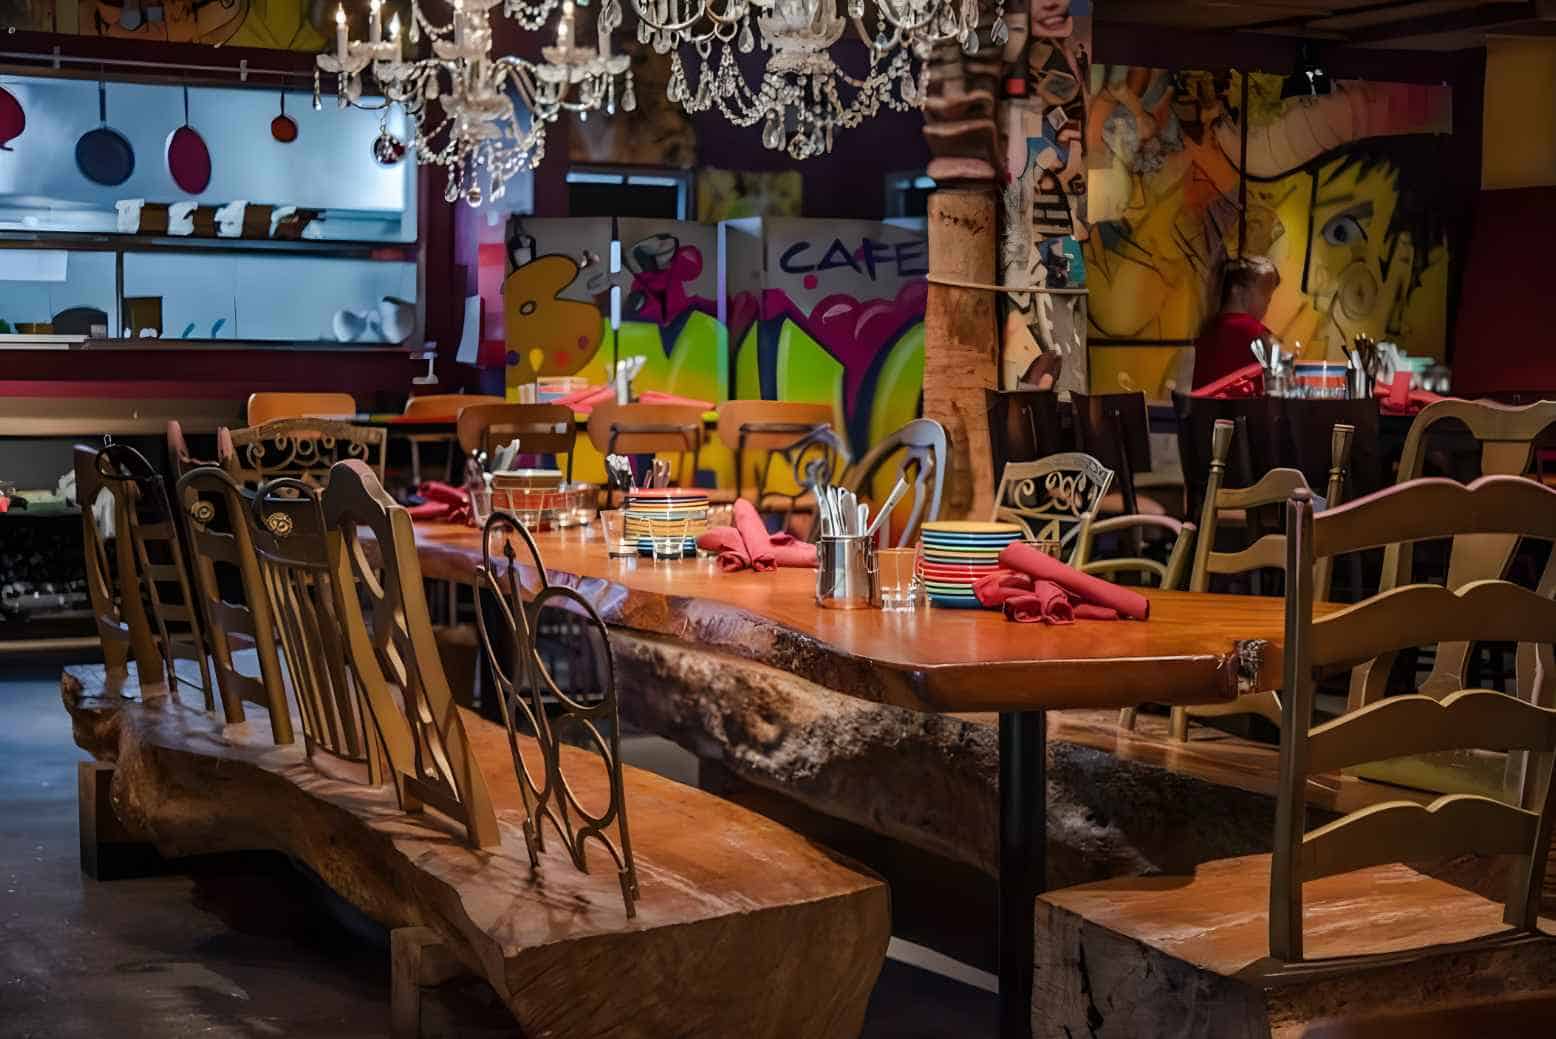 15 Best Mexican Restaurants in Orlando, FL - Birch Restaurant | Local Restaurants to Eat